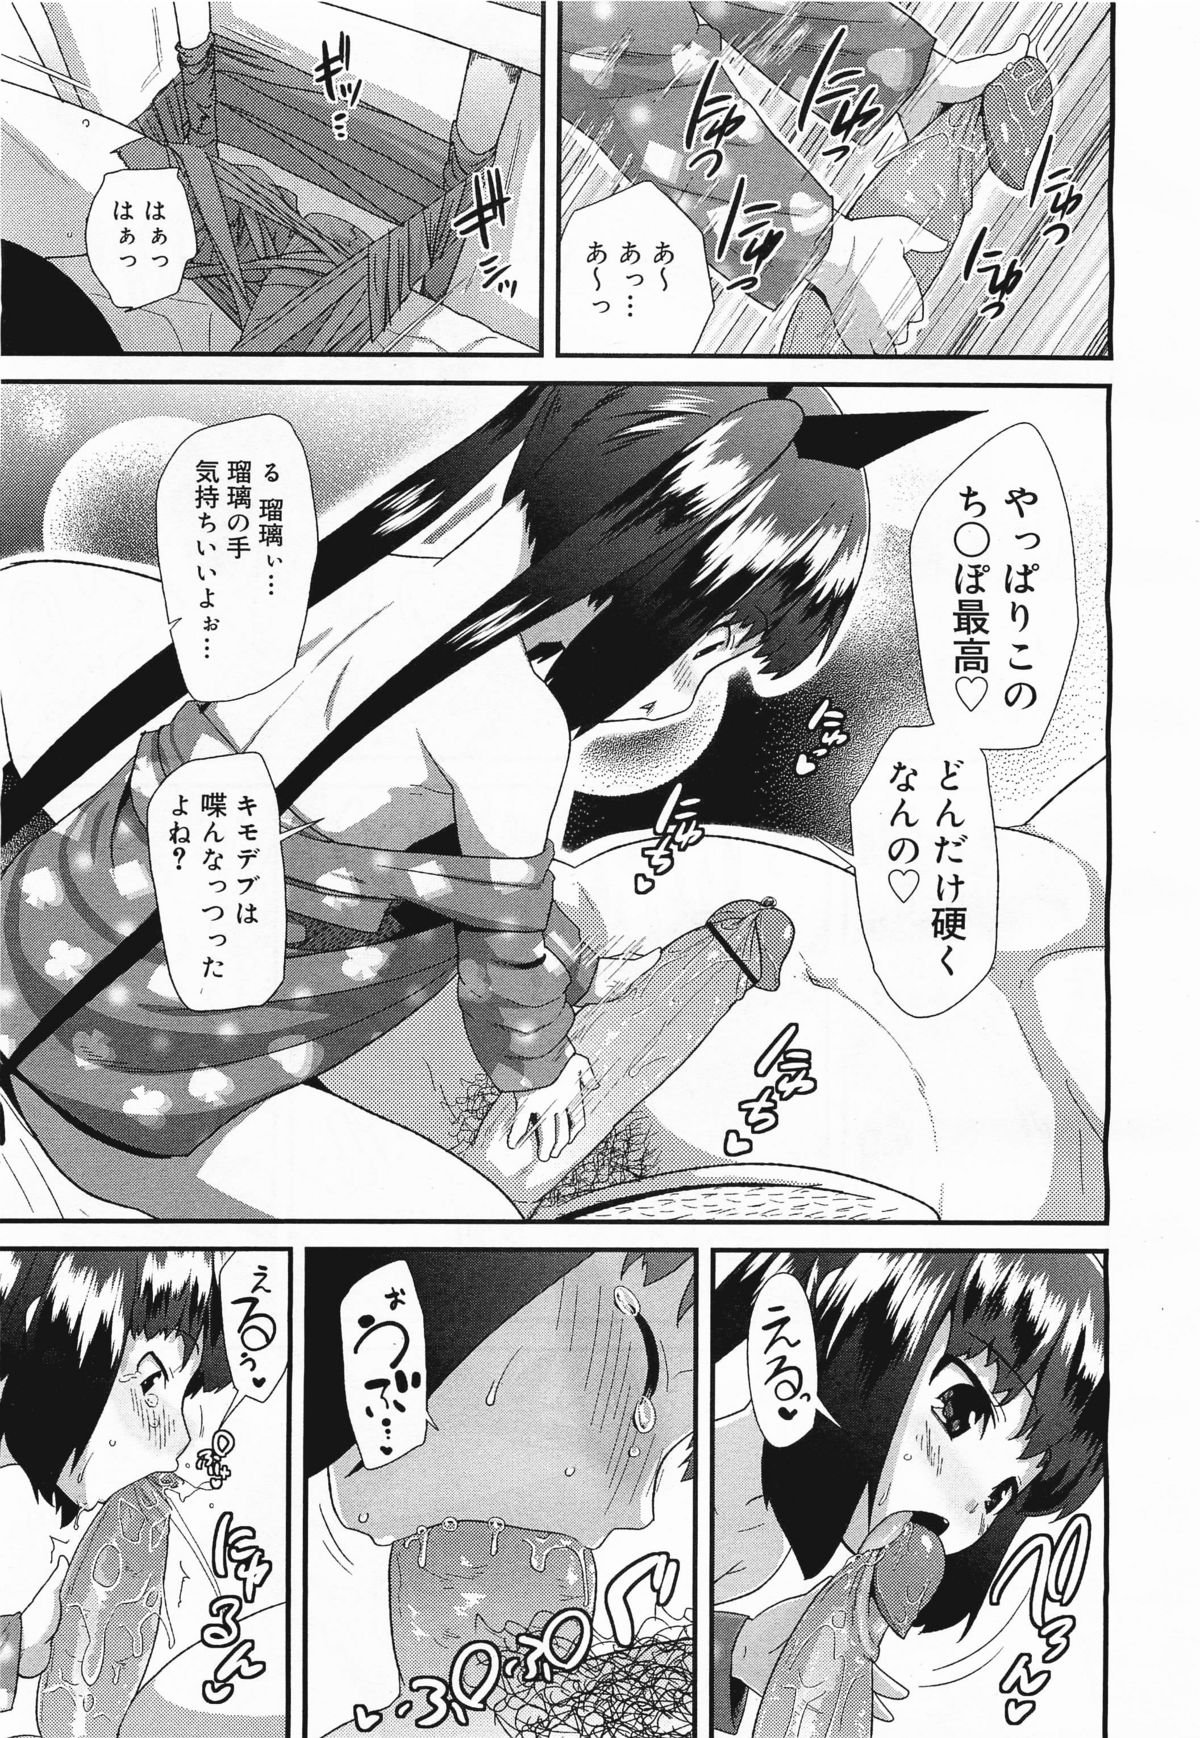 コミックメガミルク 2011年11月号 Vol.17